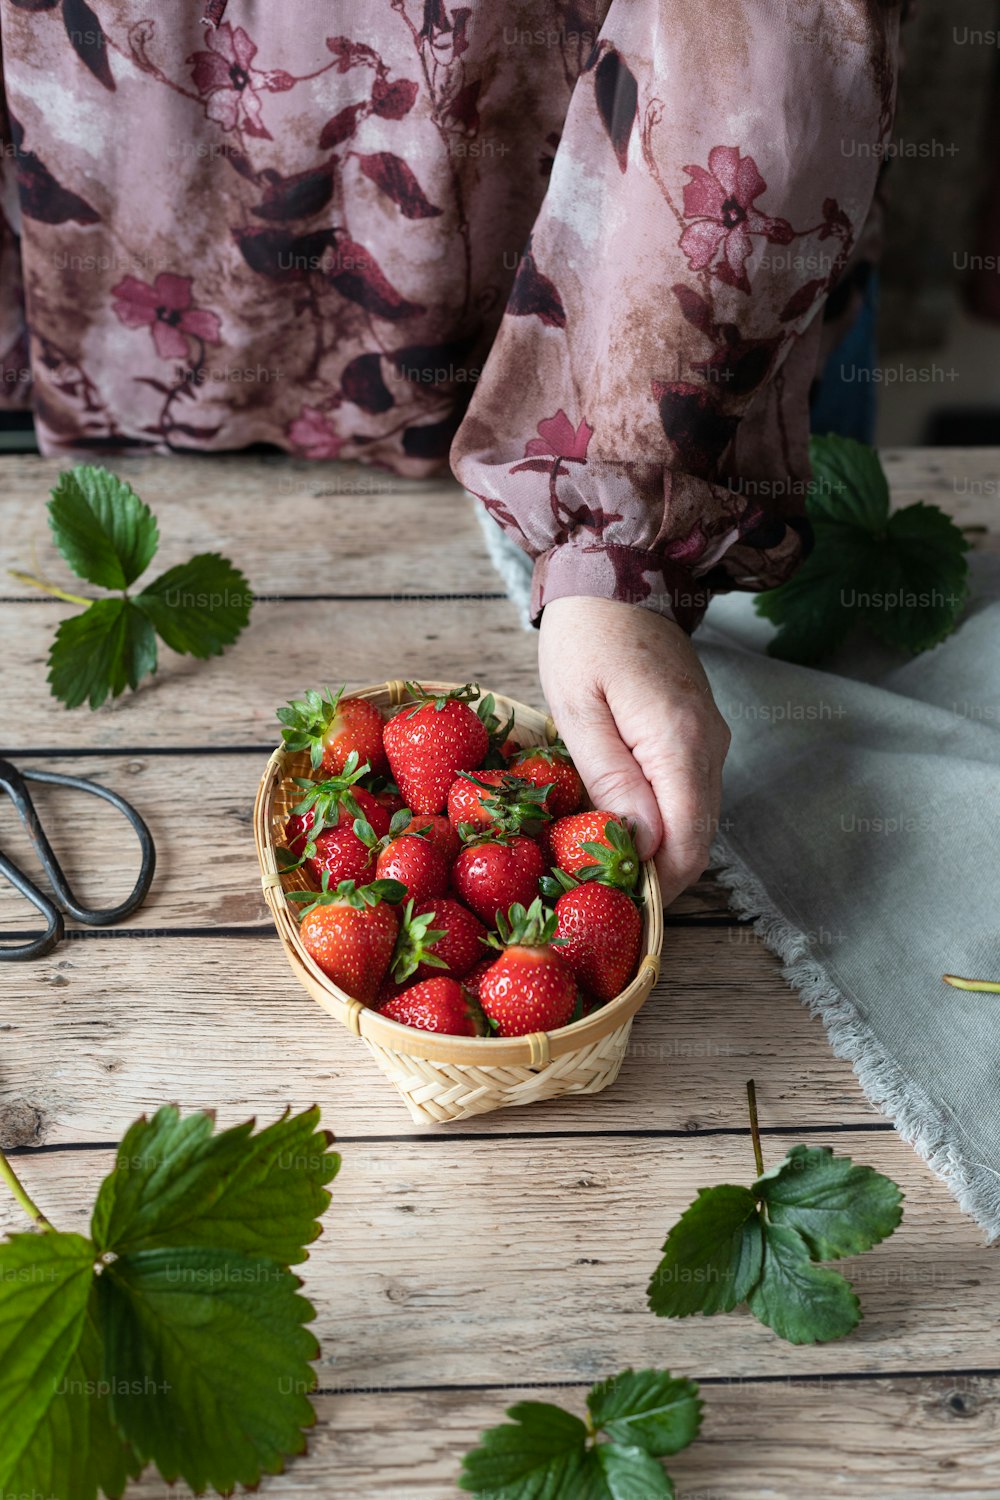 eine Person, die Erdbeeren aus einem Korb auf einem Tisch pflückt